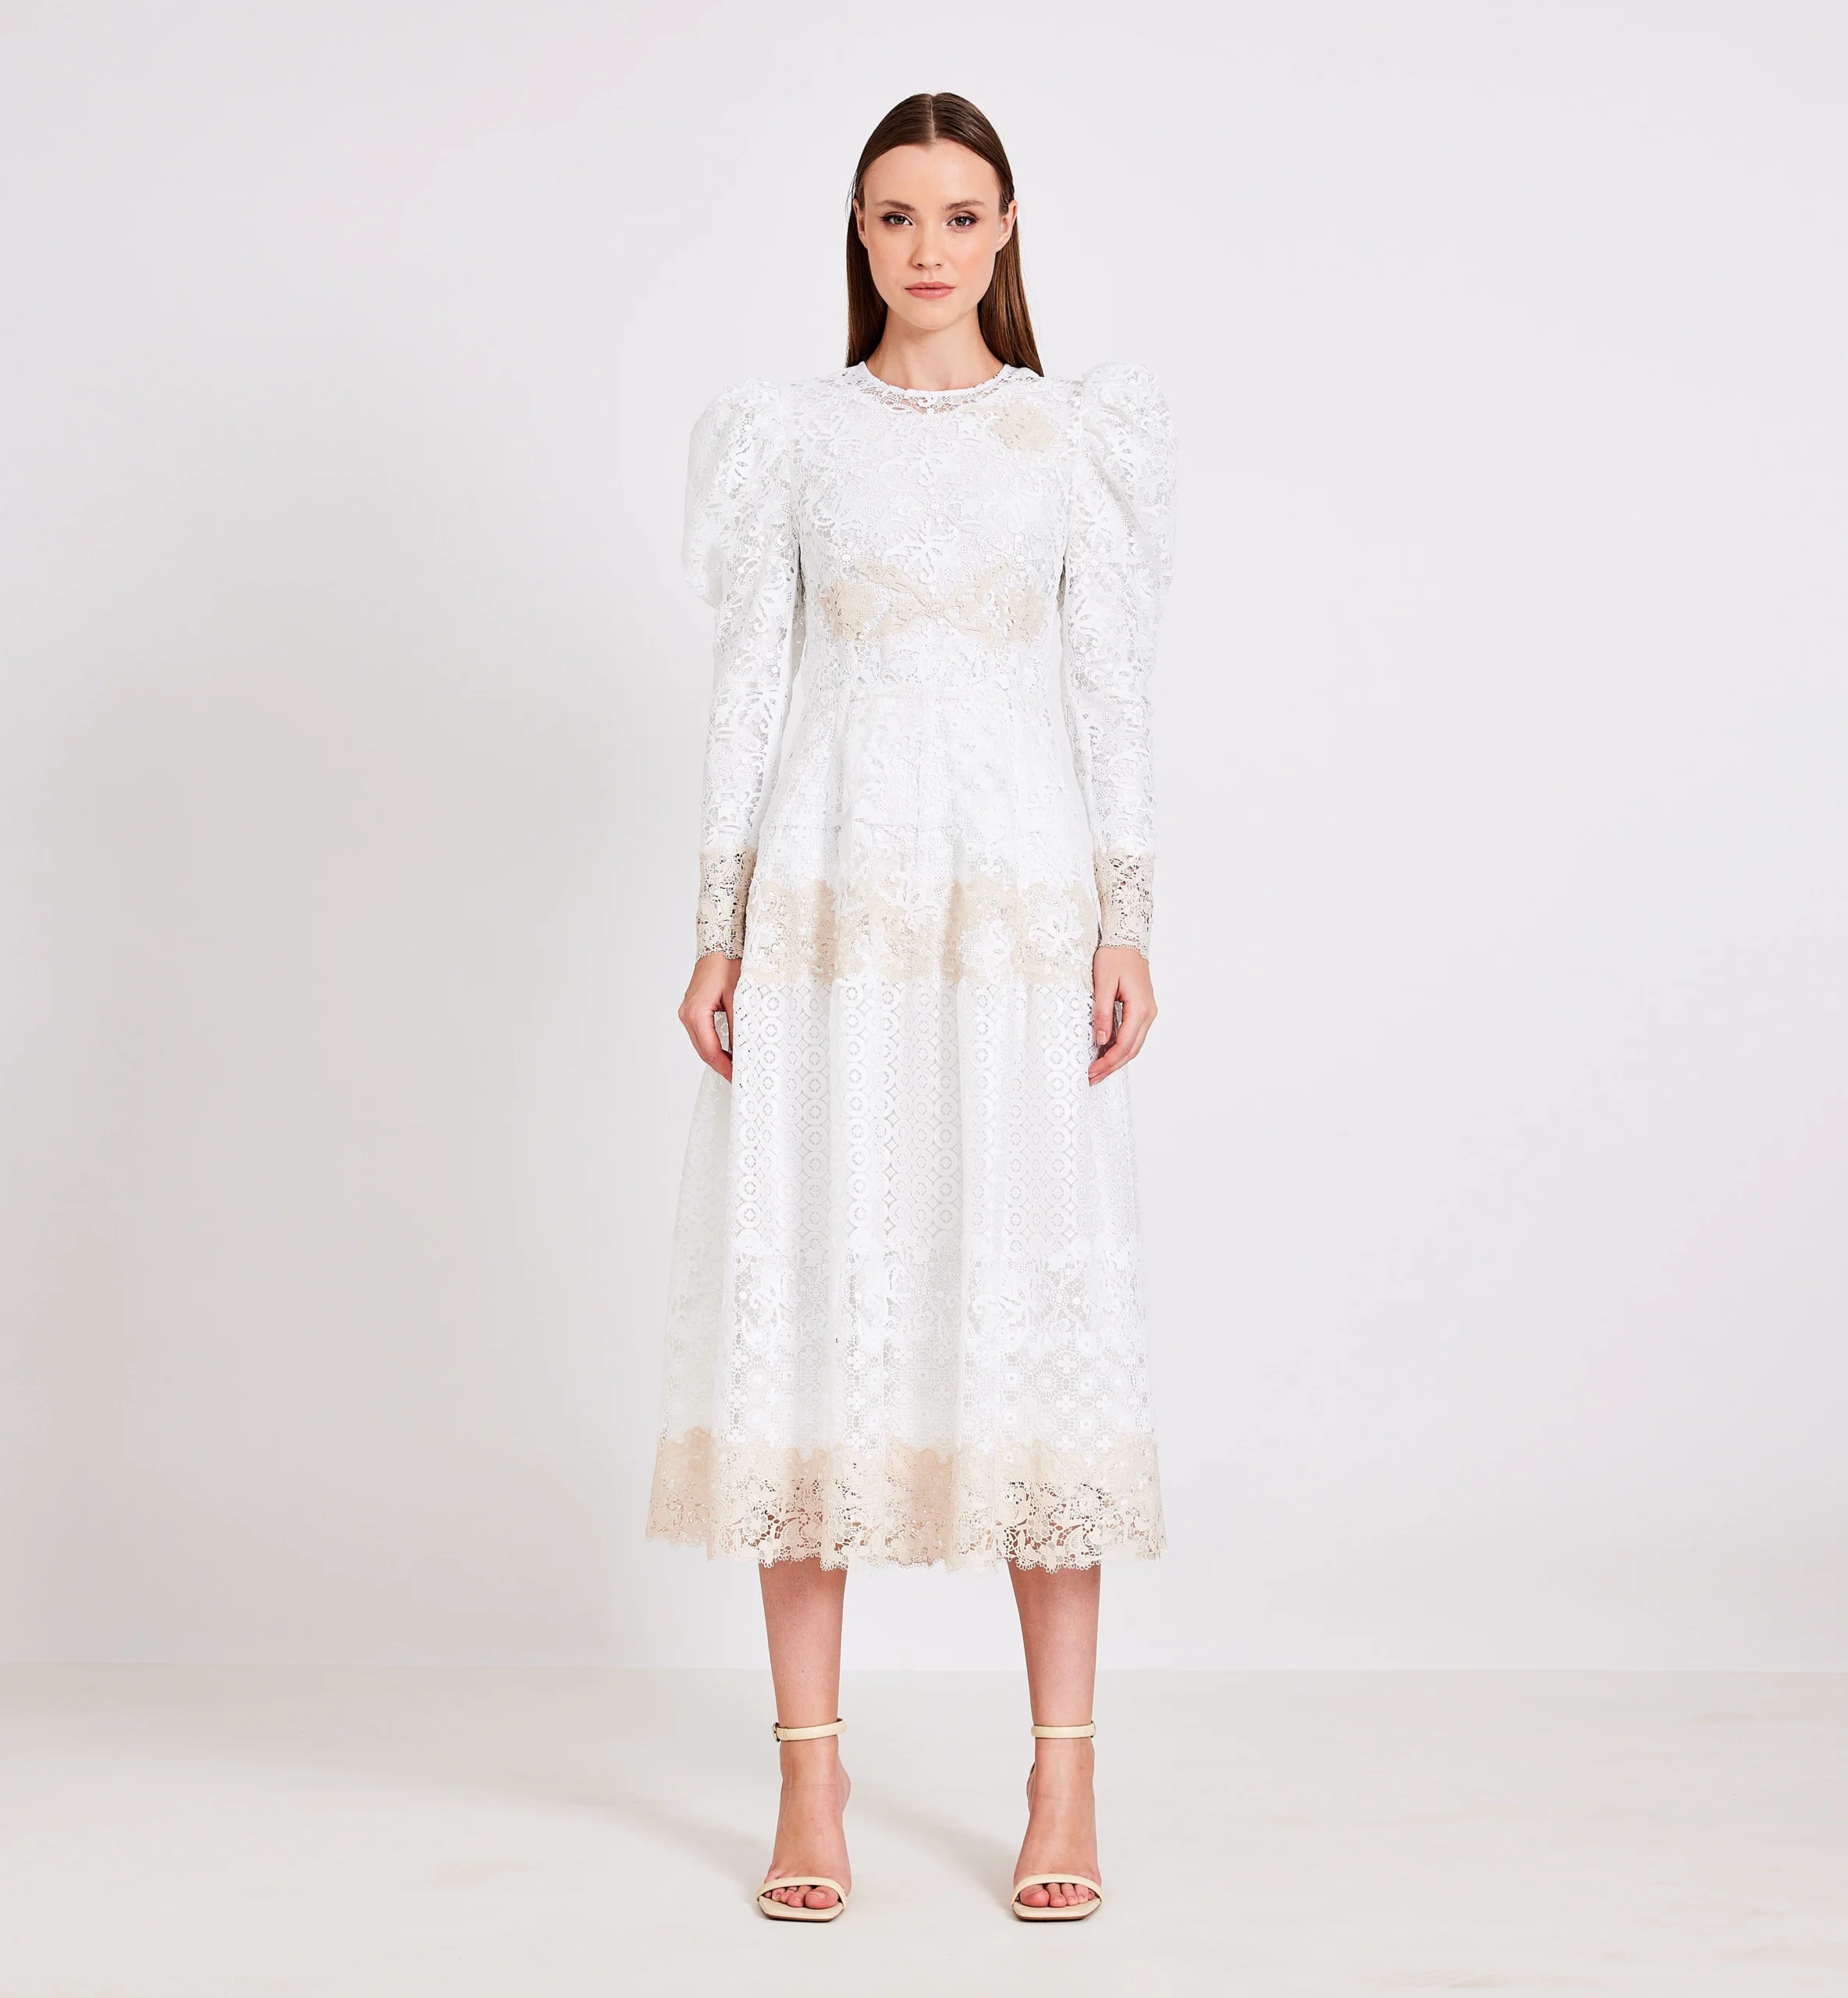 Lace combination midi dress, biege & white